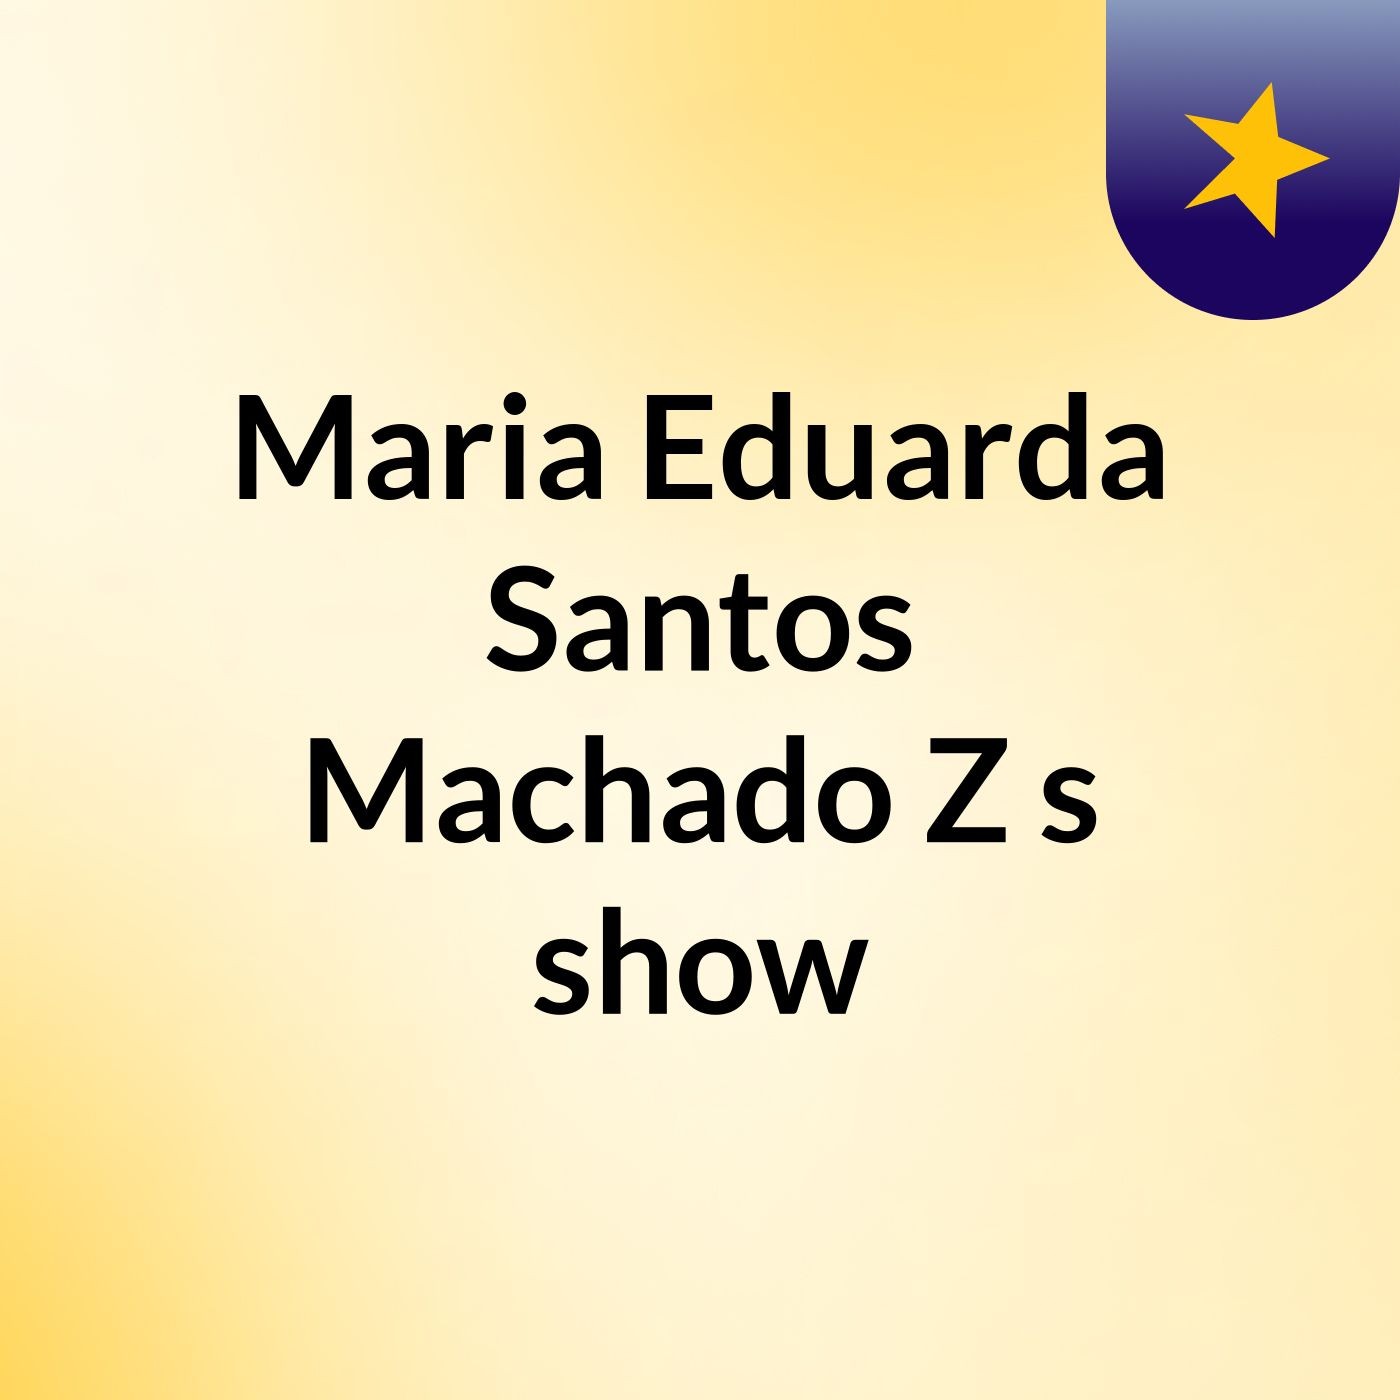 Maria Eduarda Santos Machado Z's show